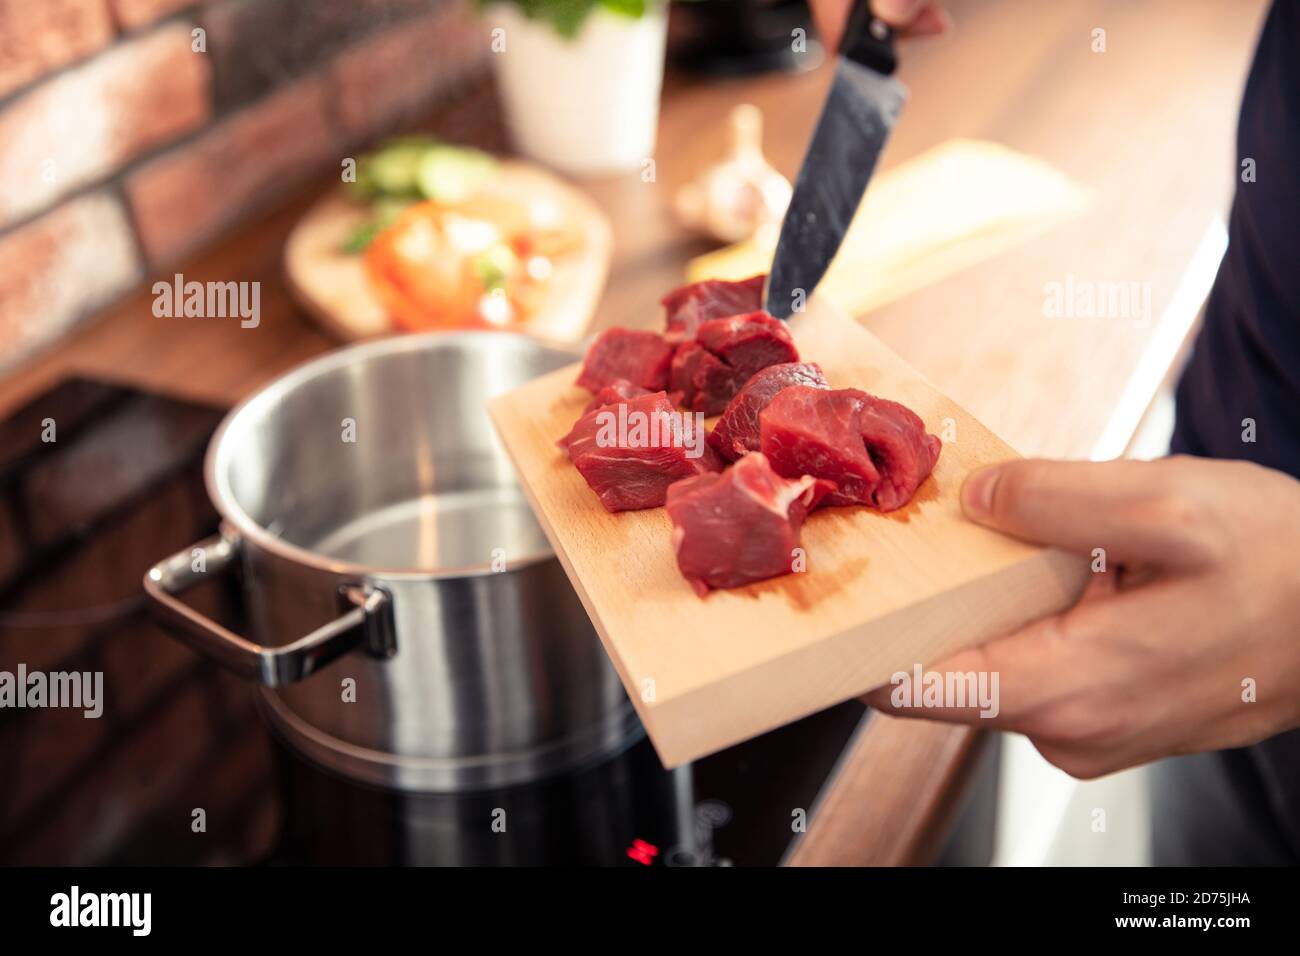 La main de l'homme dépose la viande fraîchement coupée dans un pot de eau Banque D'Images